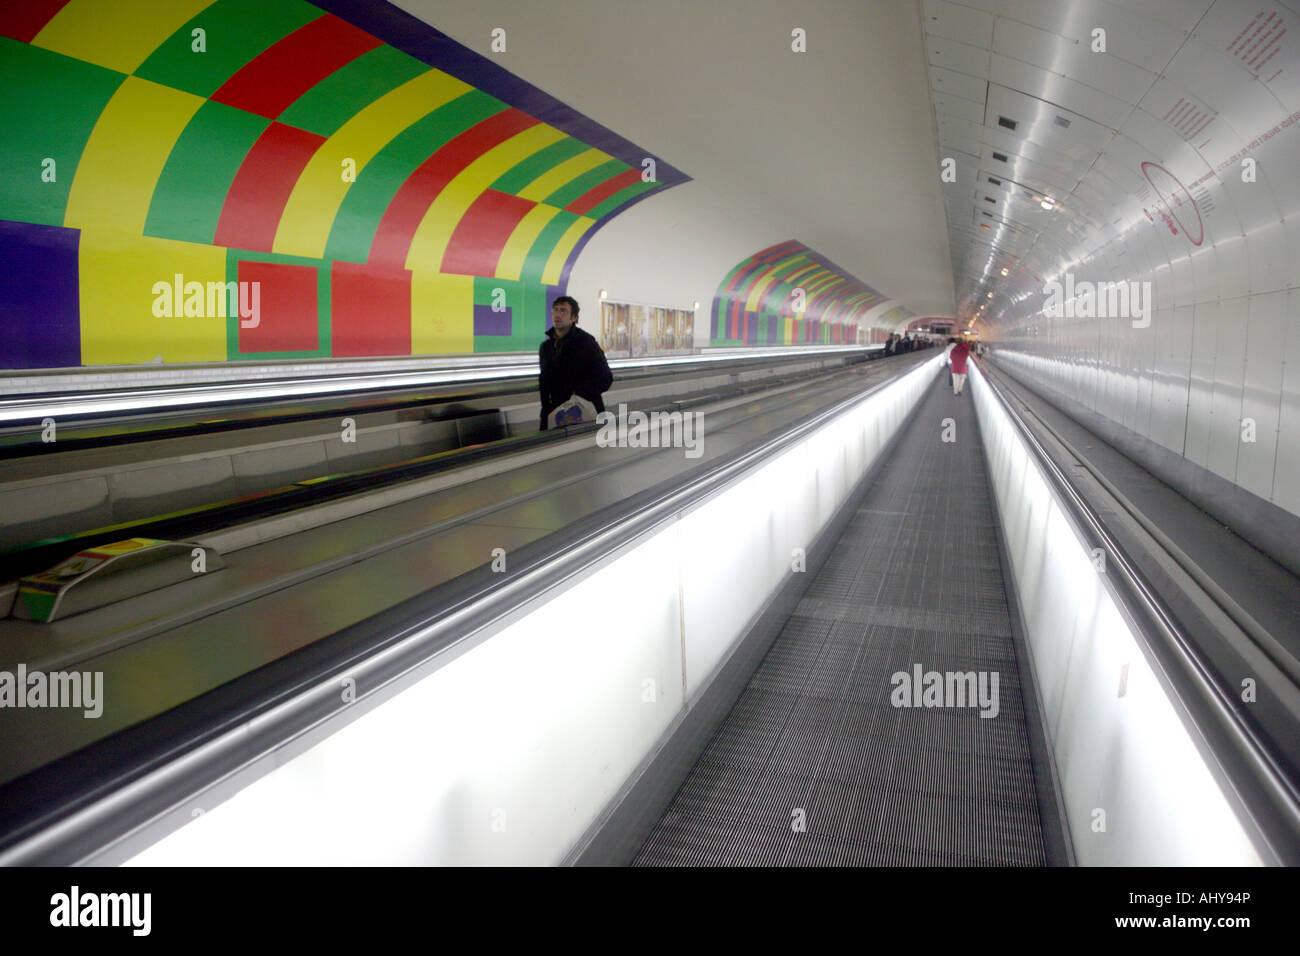 Tapis roulant in Metro interscambio, Montparnasse, Parigi Foto stock - Alamy